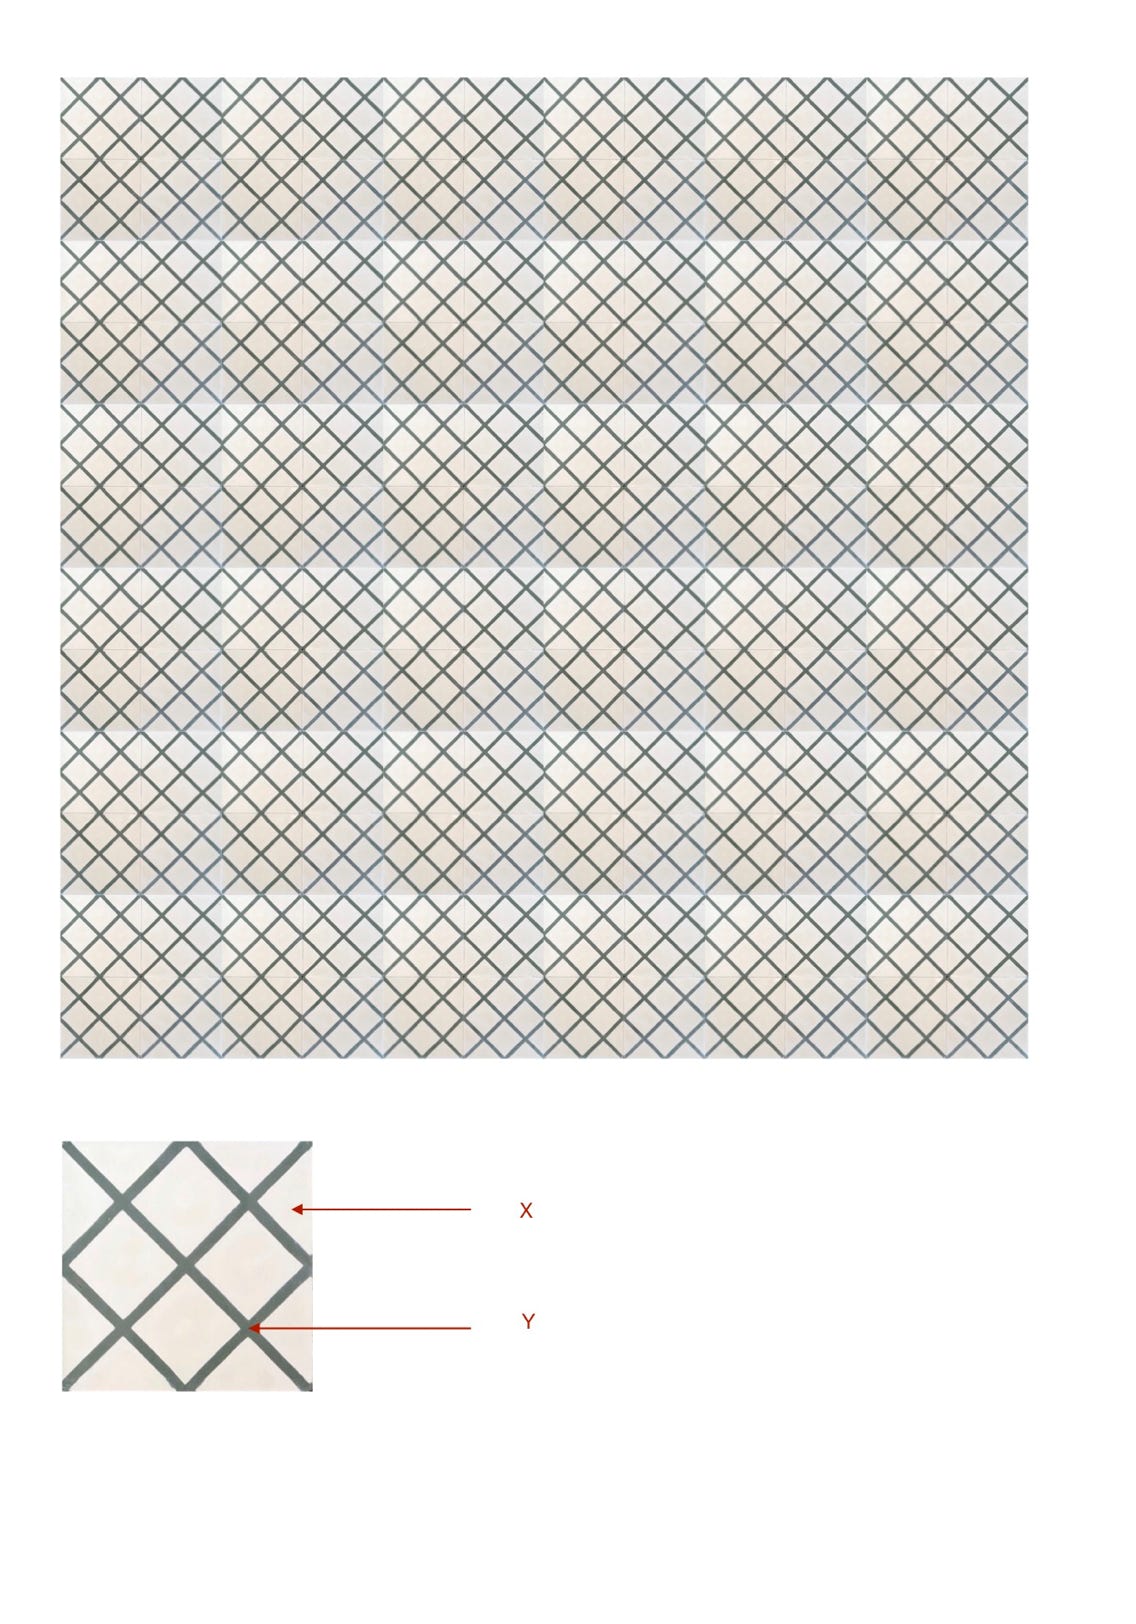 illustração de aplicação do mosaico hidráulico ref: Rede